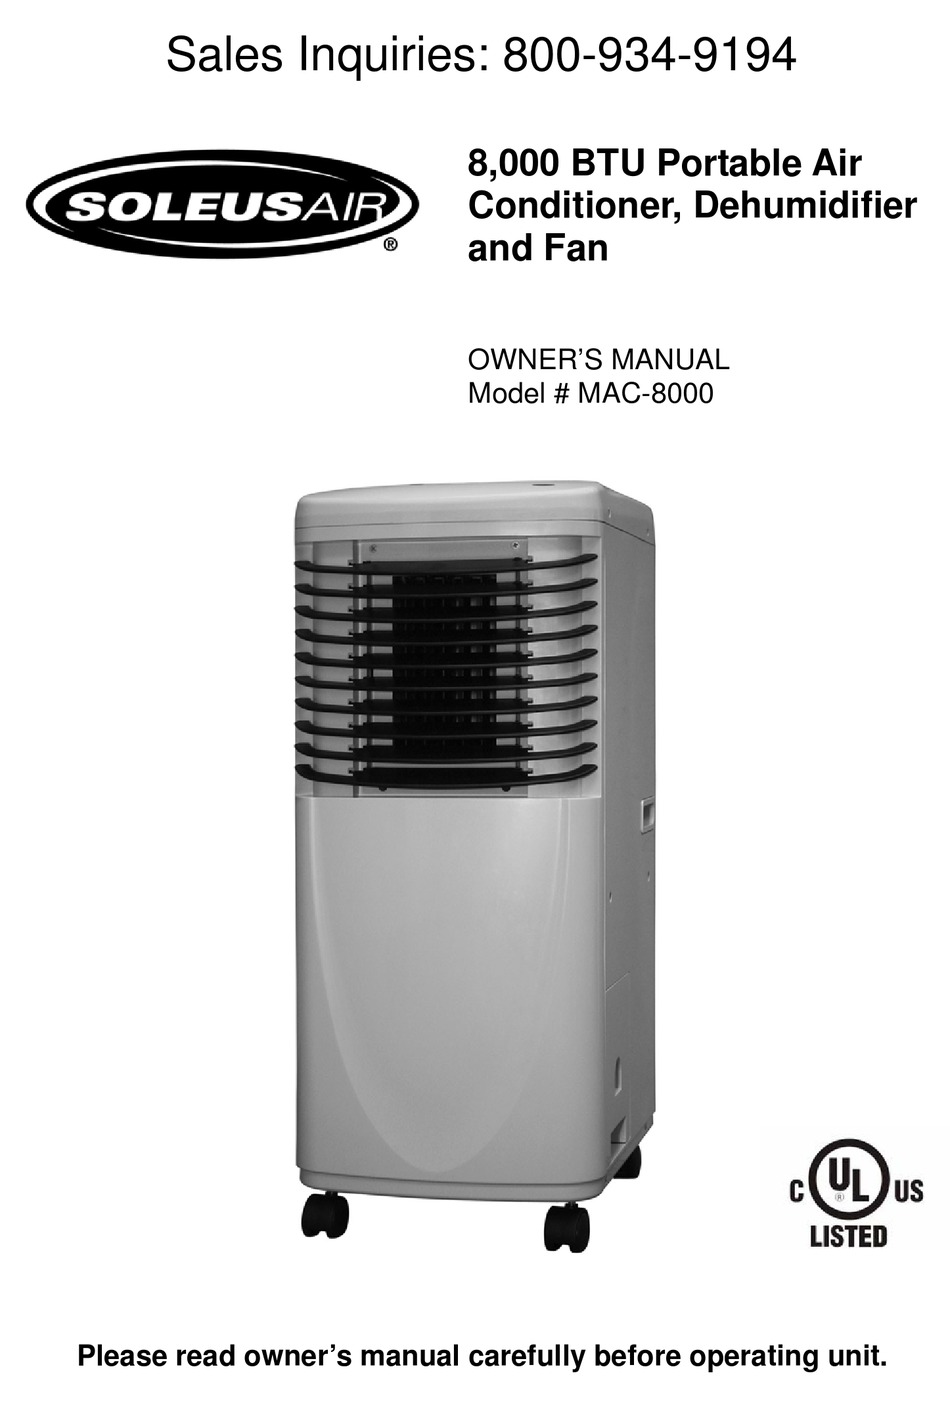 SOLEUS AIR MAC-8000 OWNER'S MANUAL Pdf Download | ManualsLib